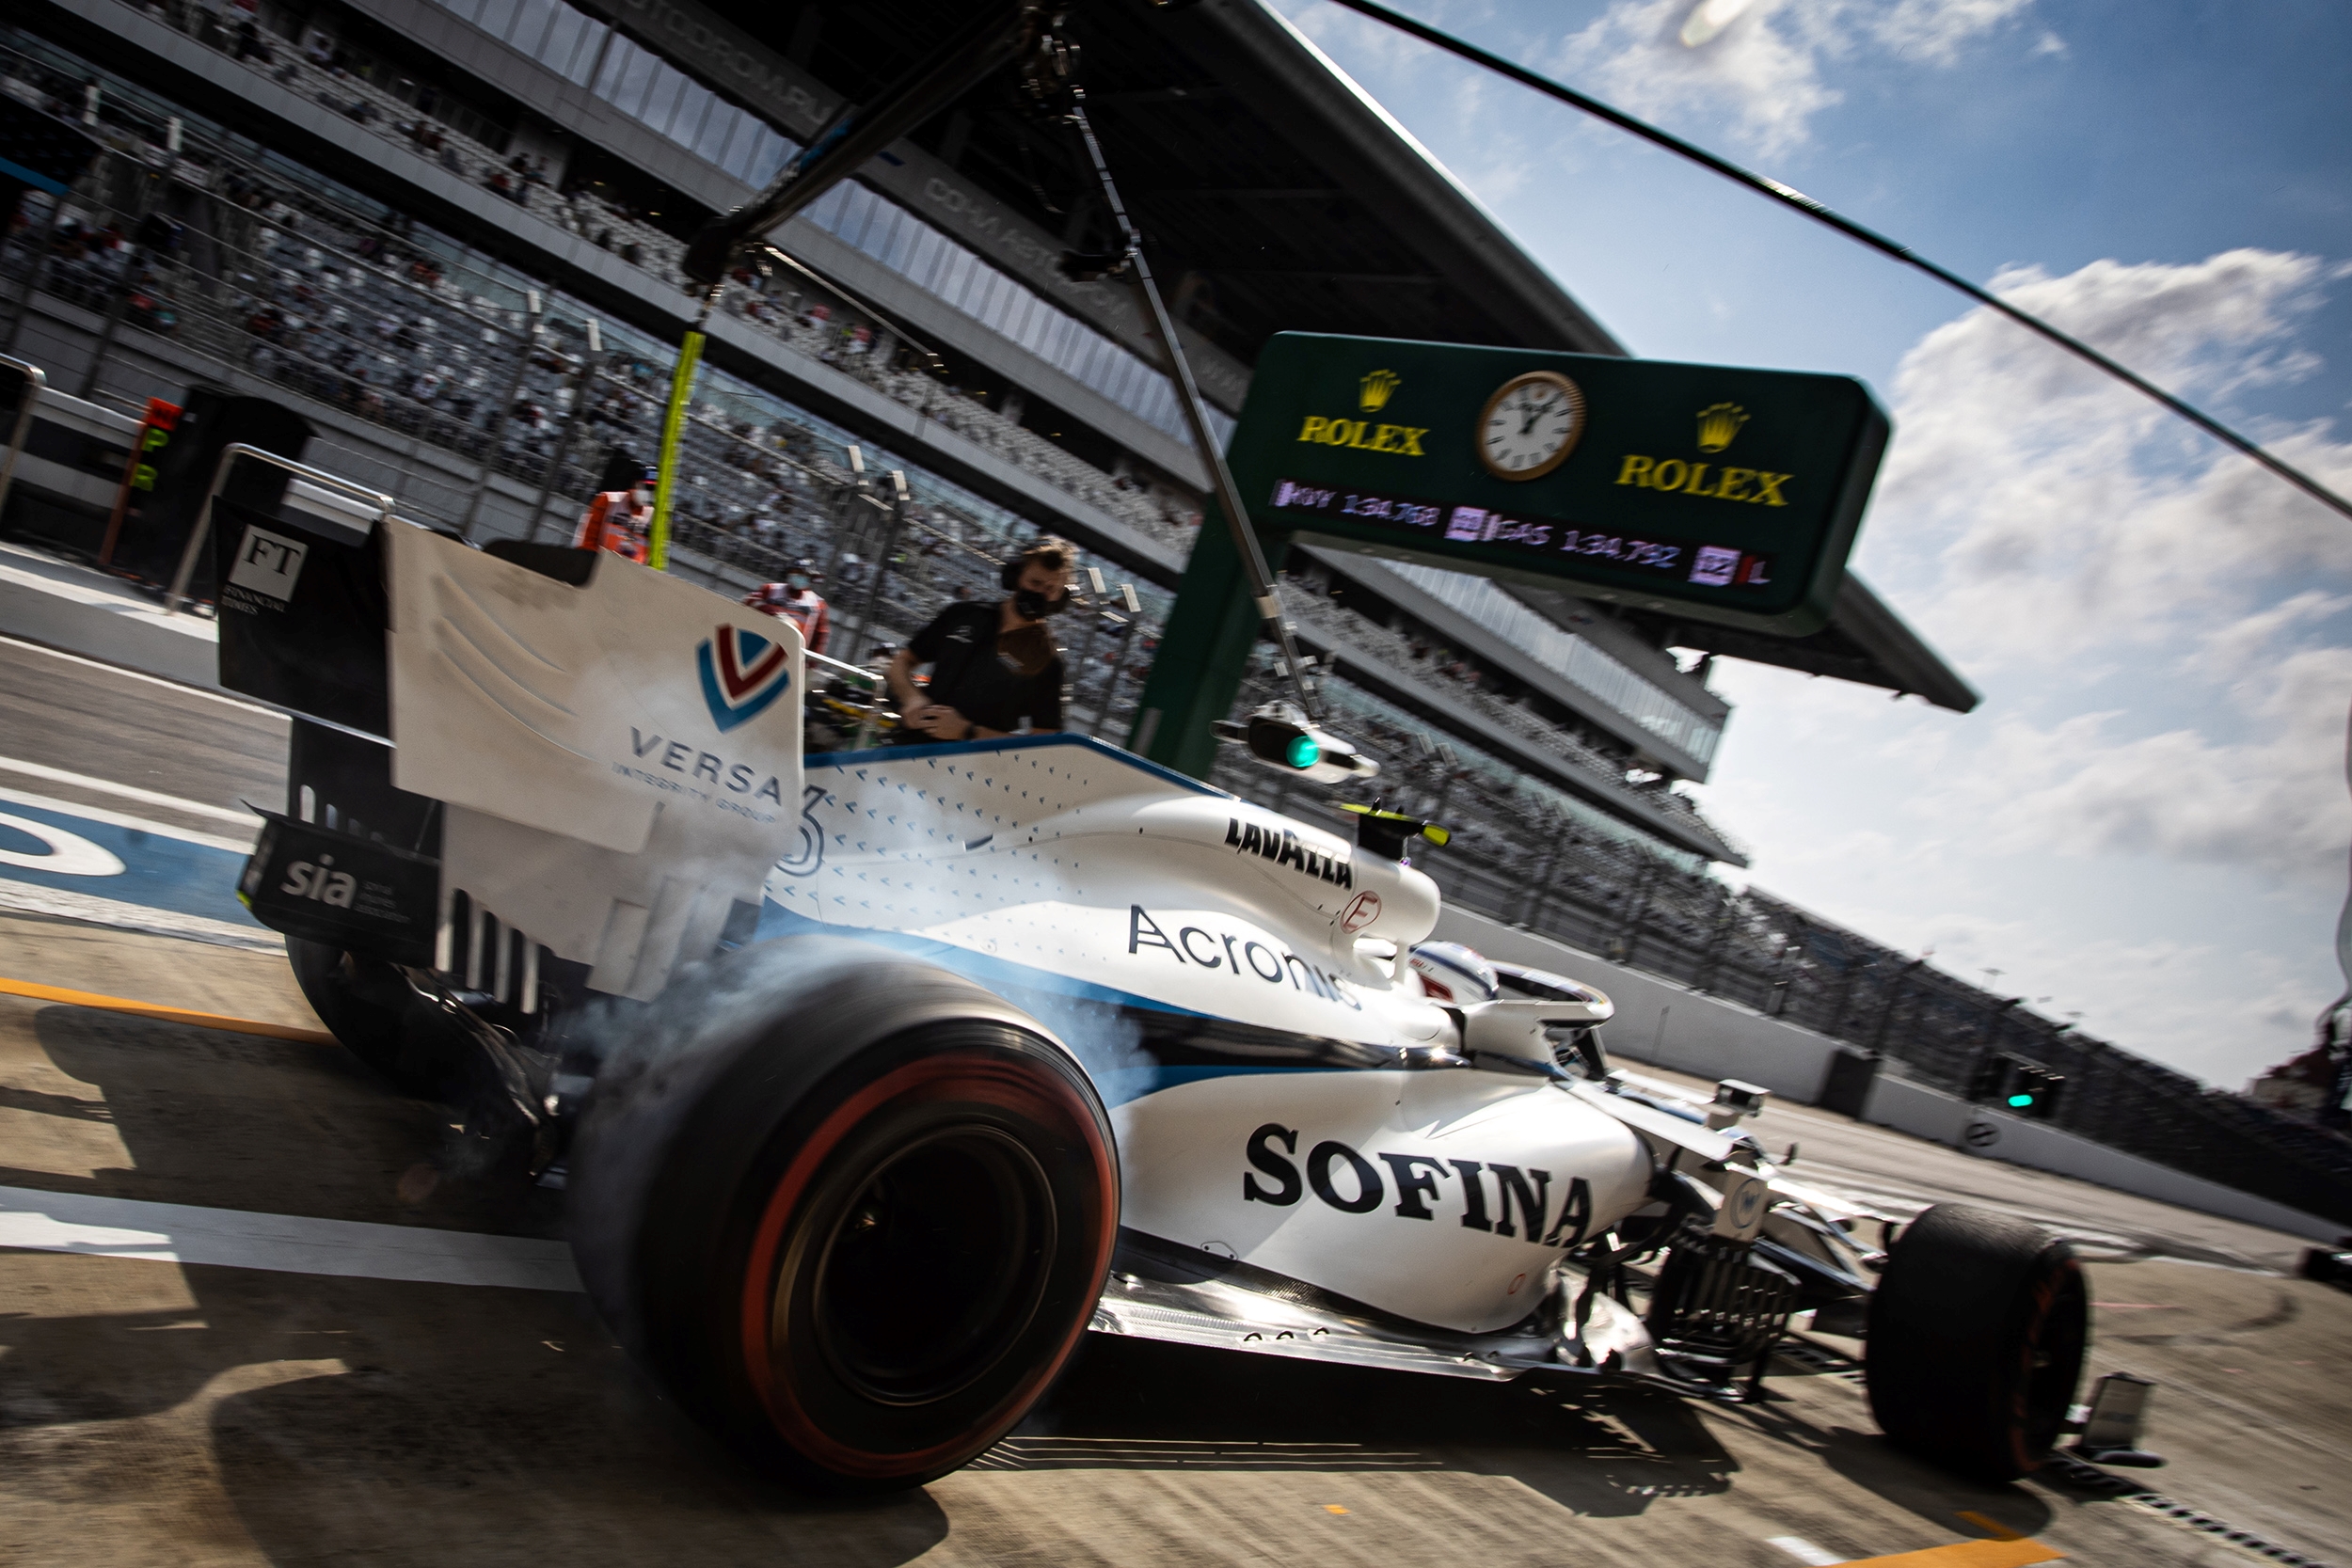 Sábado en Rusia – Williams busca ritmo de carrera con una buena estrategia en Quali